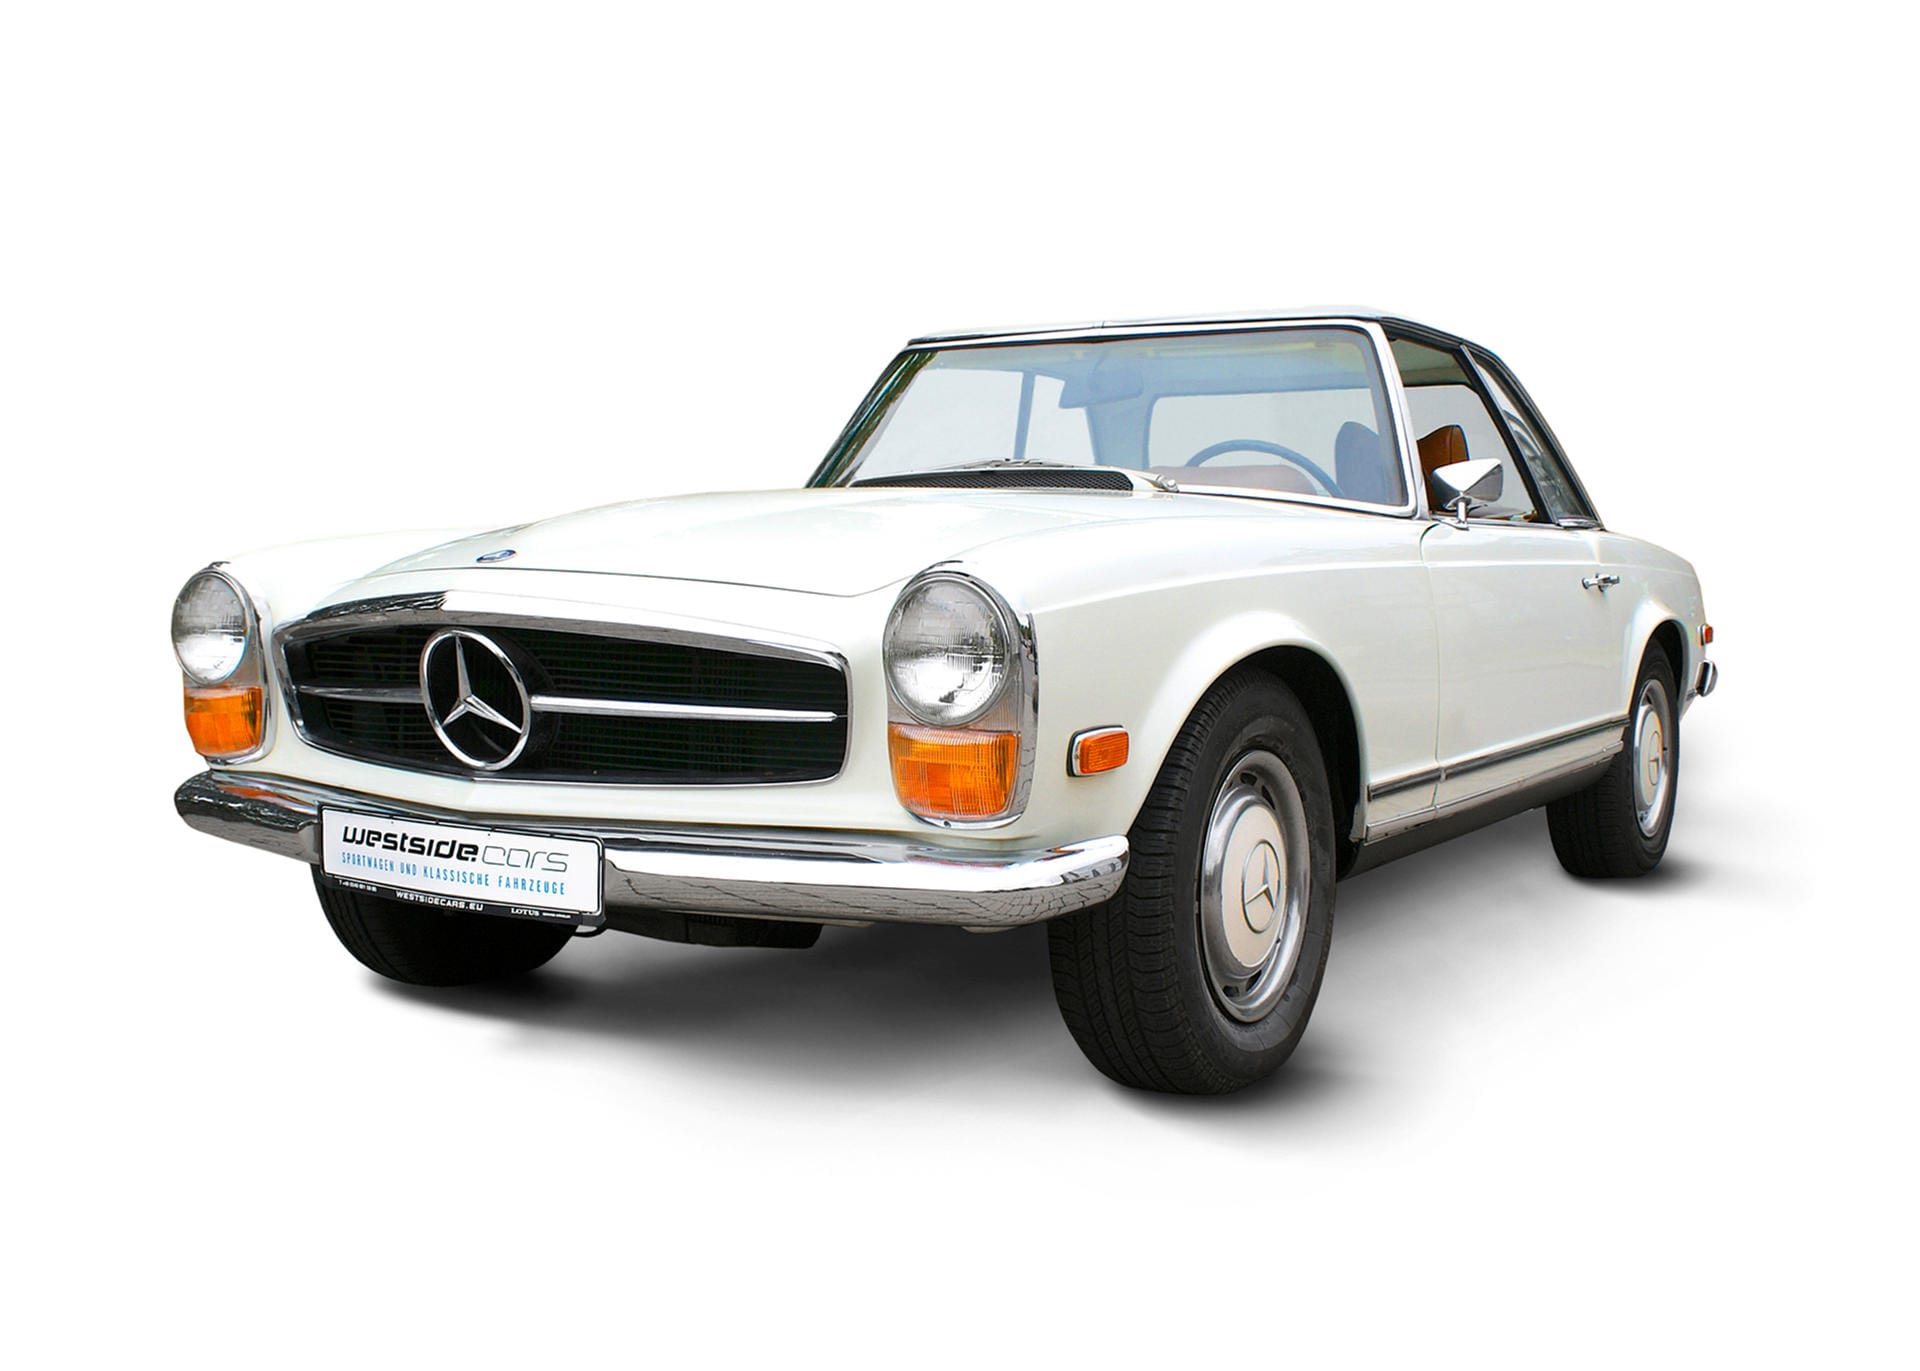 Der Mercedes 280 SL Automatik W113 "Pagode", Baujahr 1971, ist ein US-Modell. Zu erkennen an der Tachostand-Angabe in Meilen. Ihn gibt es bei Tchibo für 54.900 Euro.